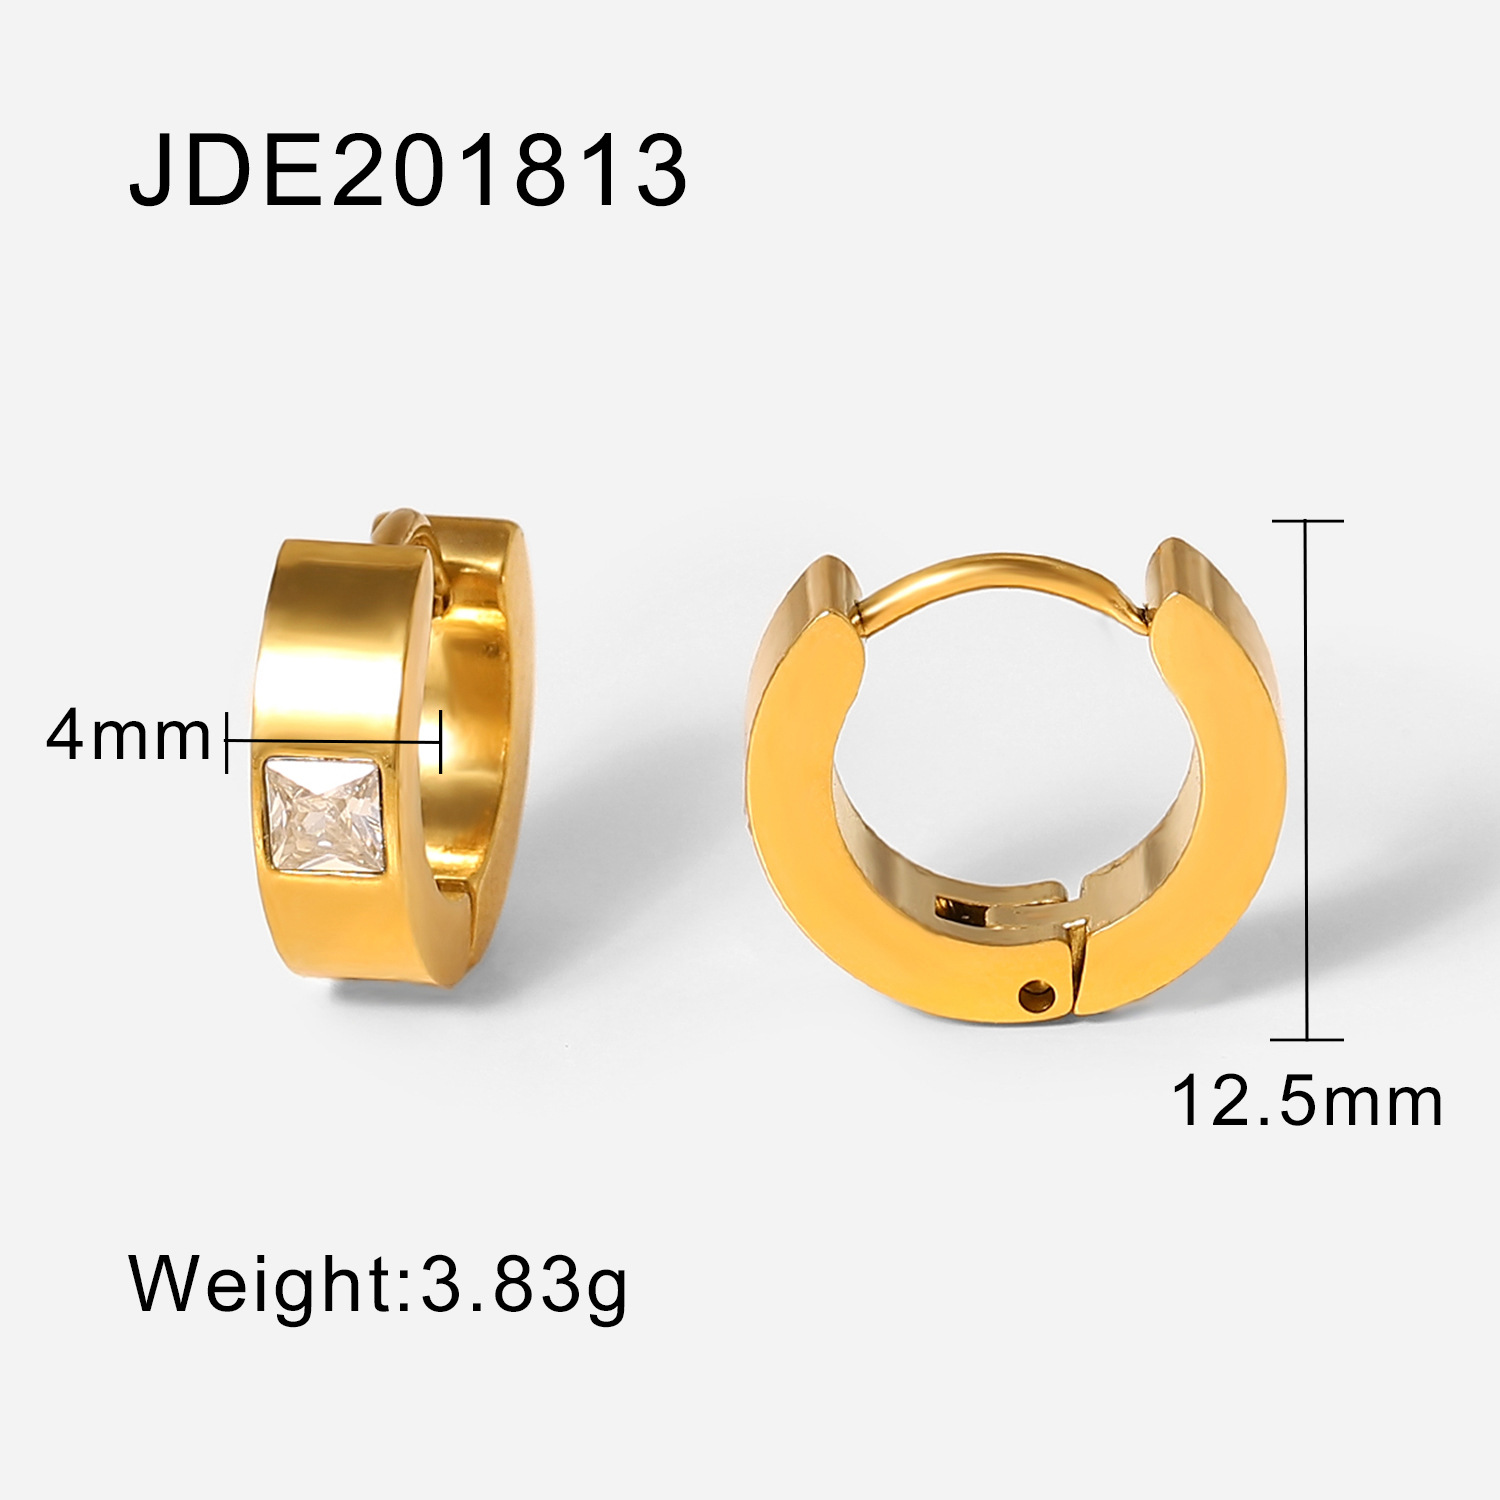 JDE201813 size